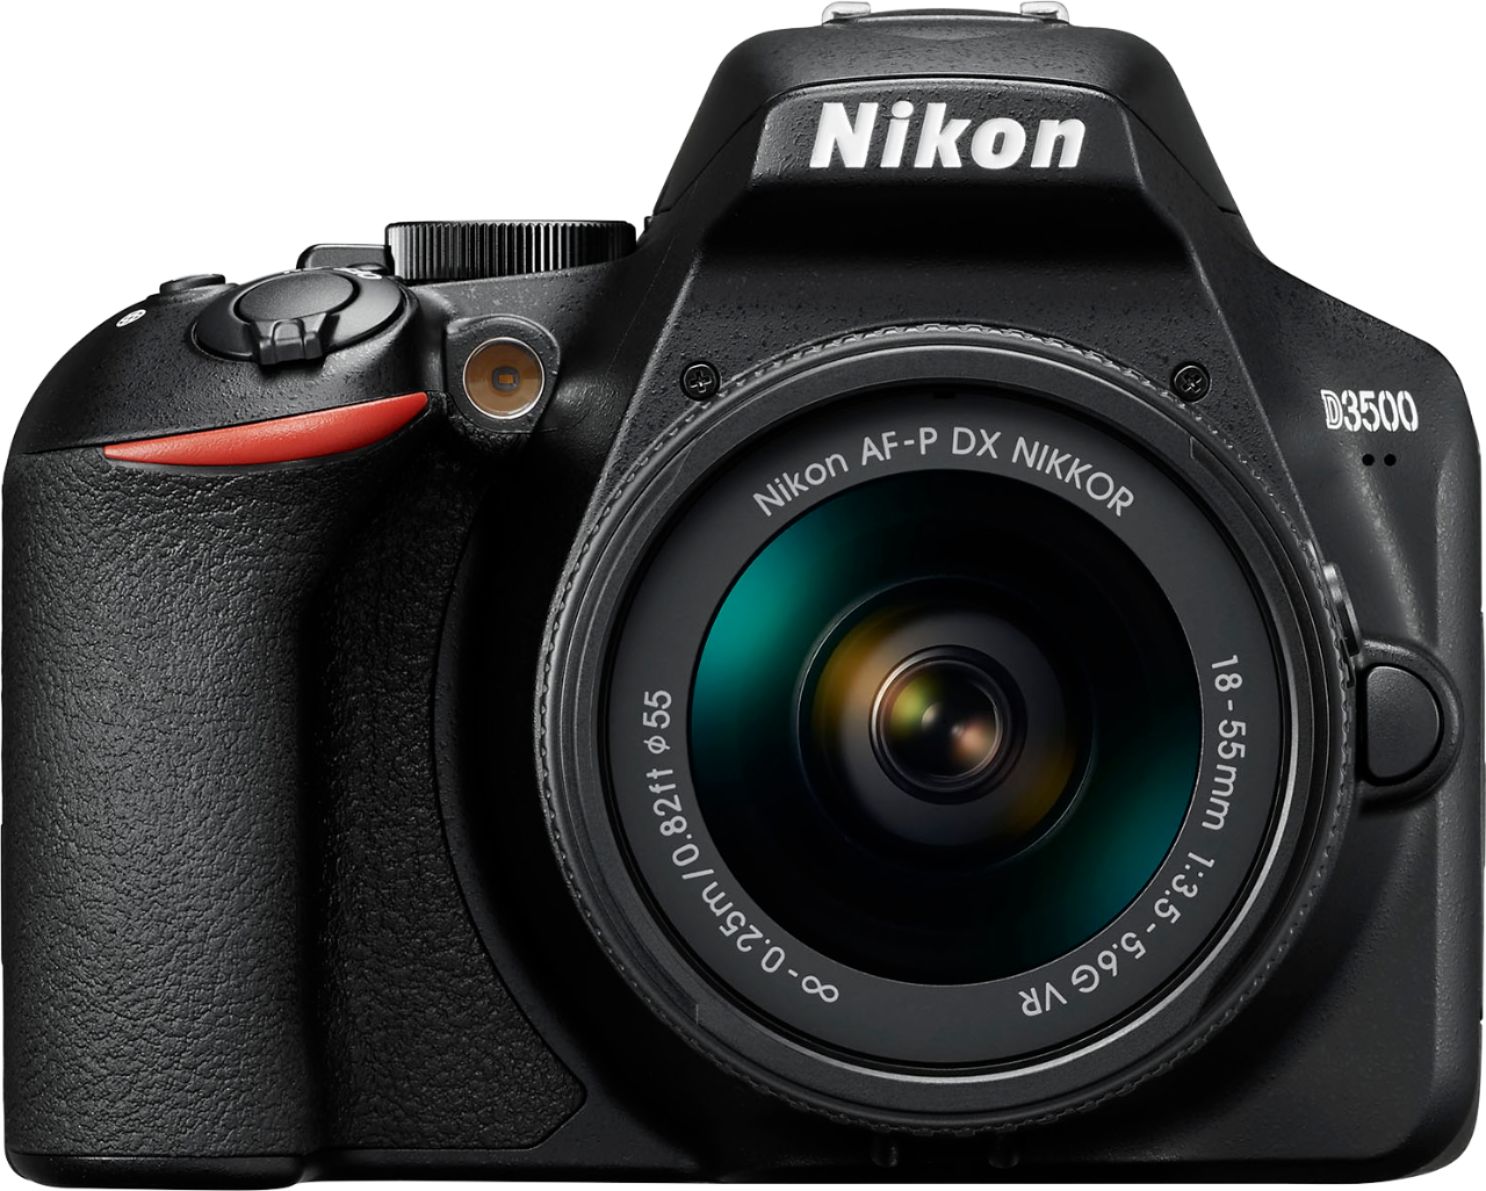 Nikon D3500 DSLR Video Camera with AF-P DX NIKKOR  - Best Buy